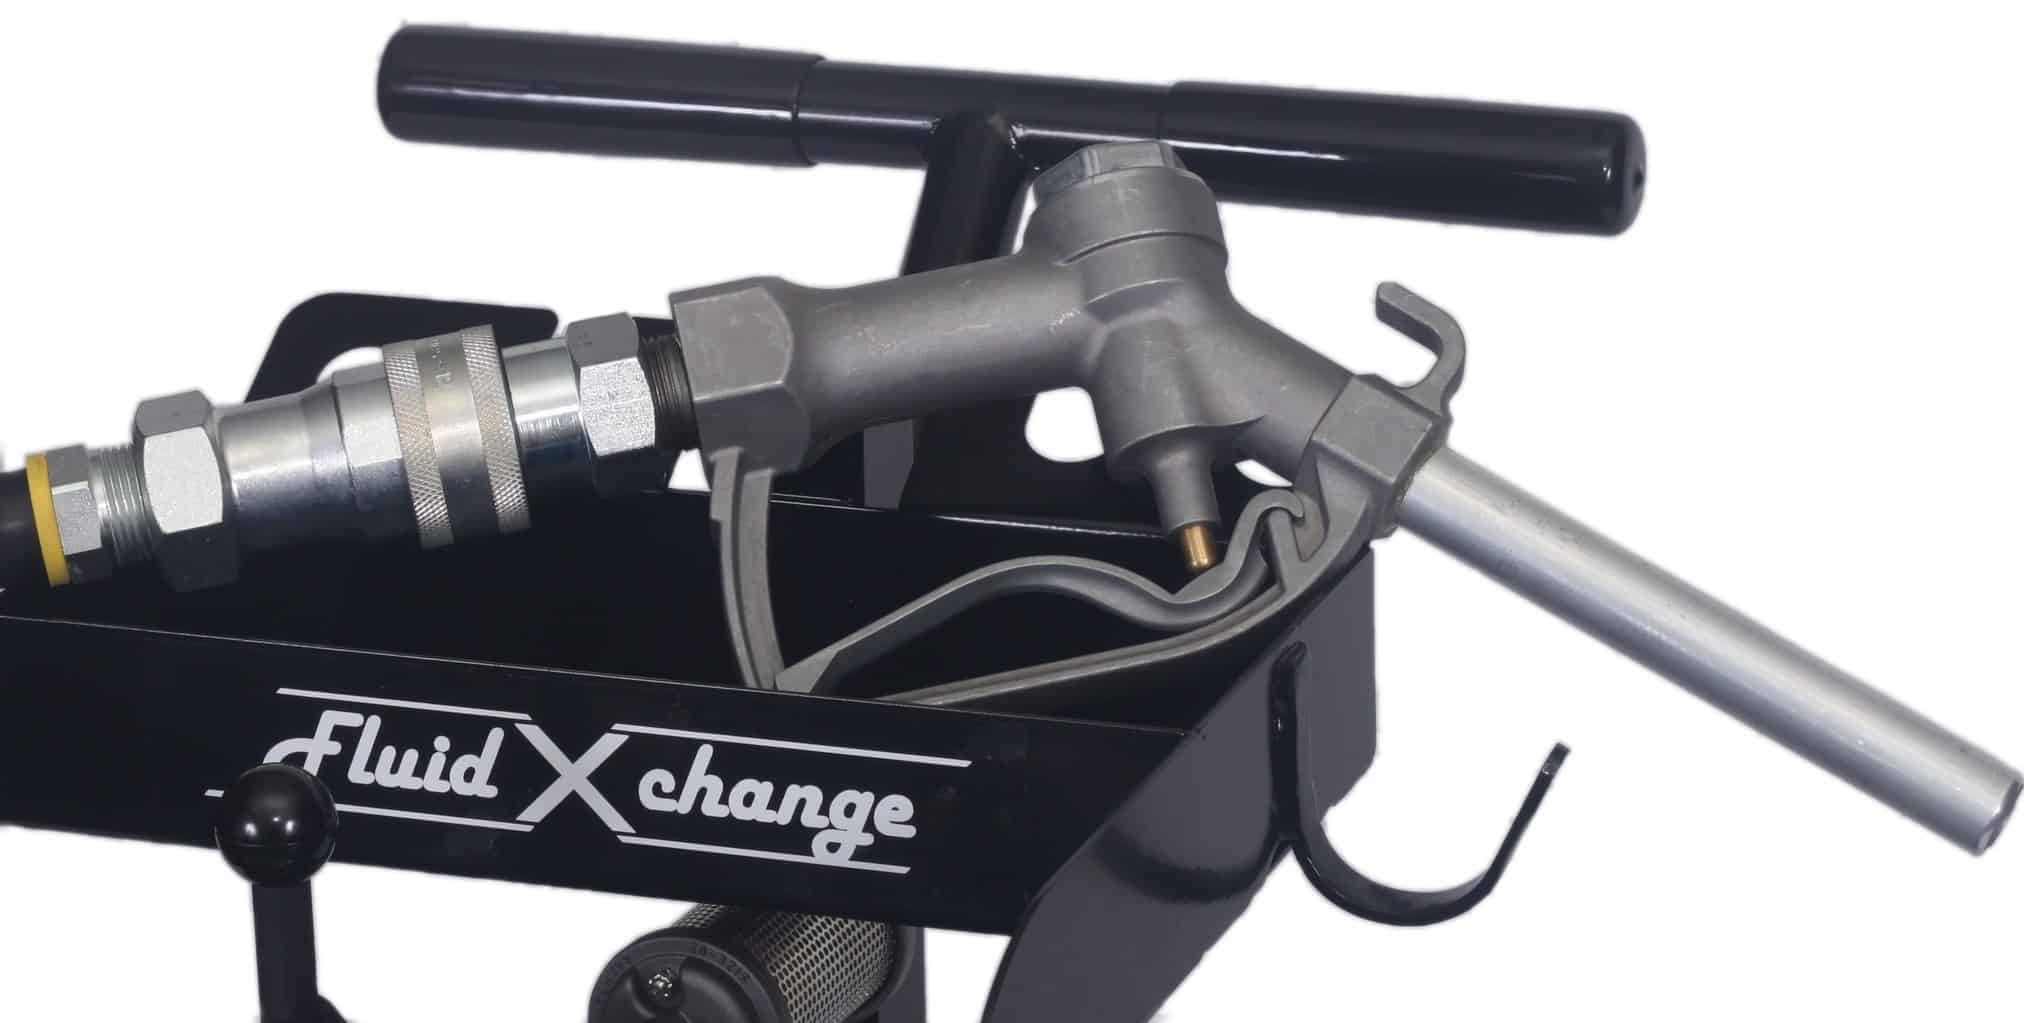 Oil Extractor Tool – FluidXchange